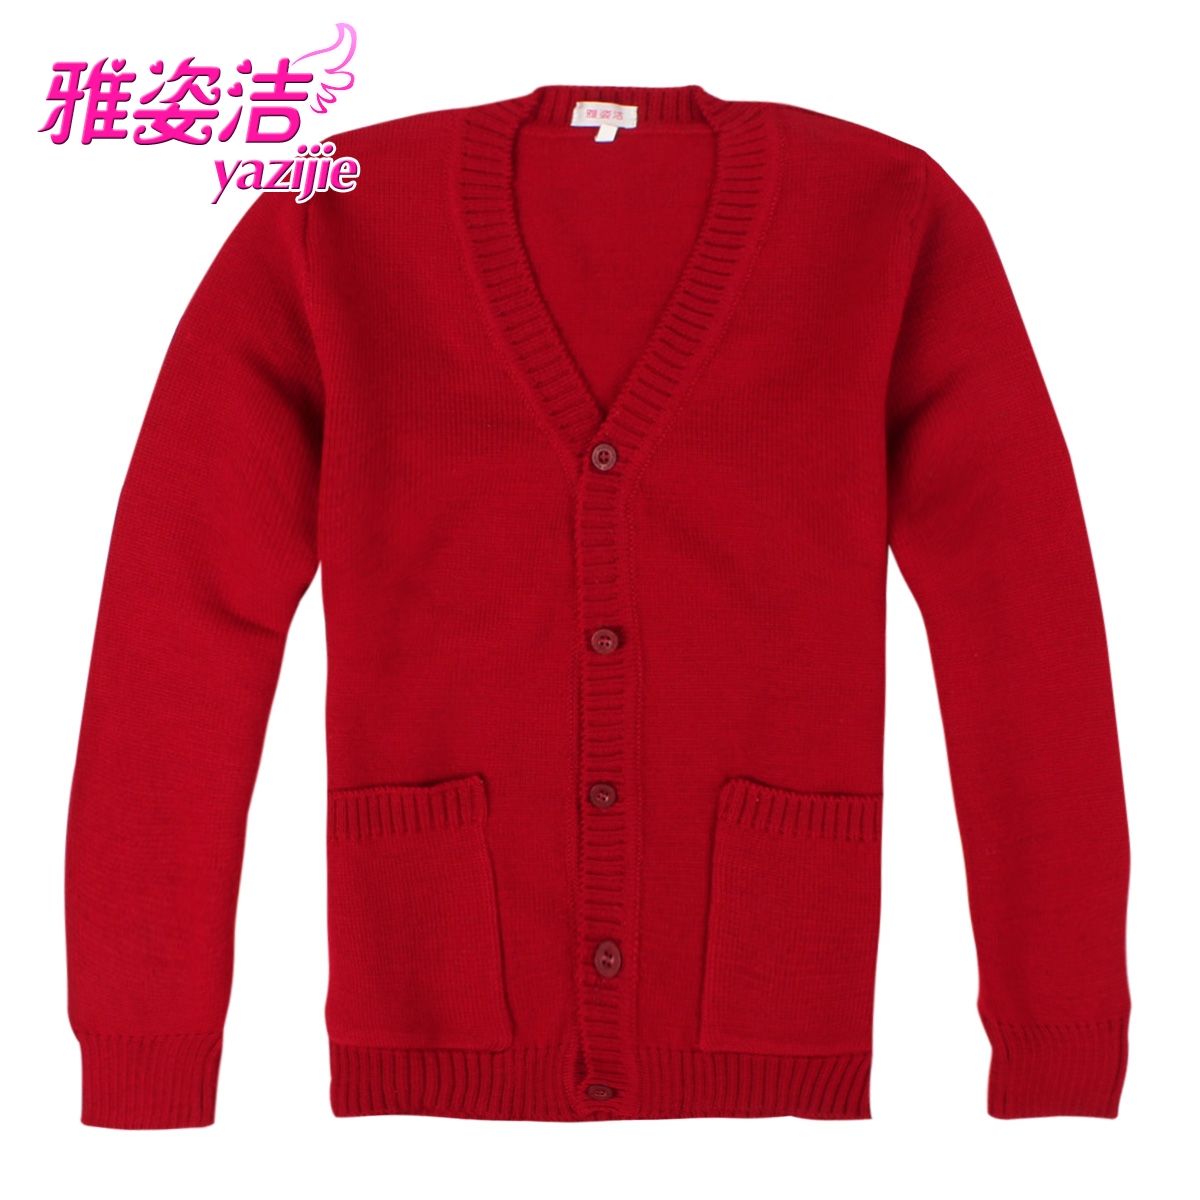 雅姿洁护士毛衣 中国红V领不起球丝光羊毛护士毛衫外套工作衫特价